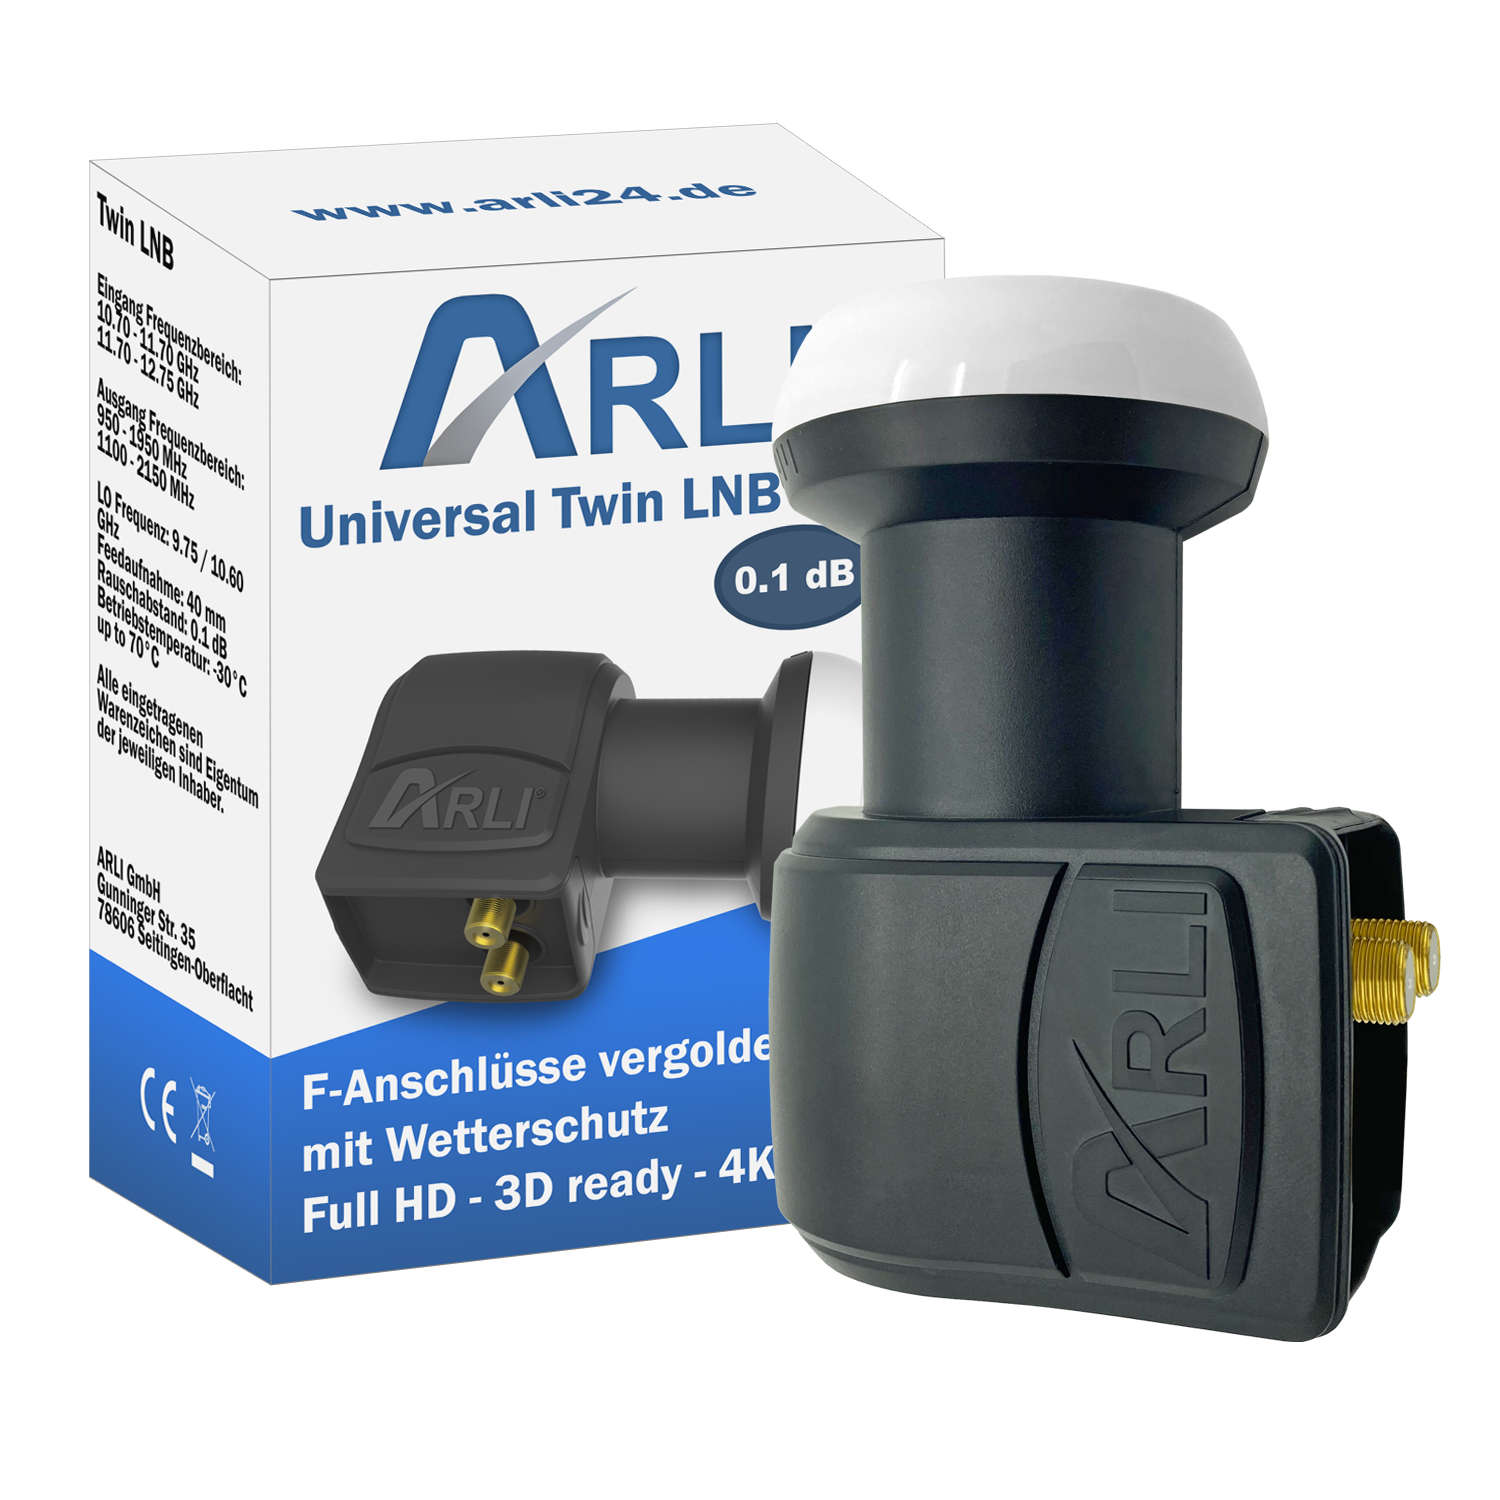 ARLI Universal Teilnehmer dB - LNB Twin 2 0.1